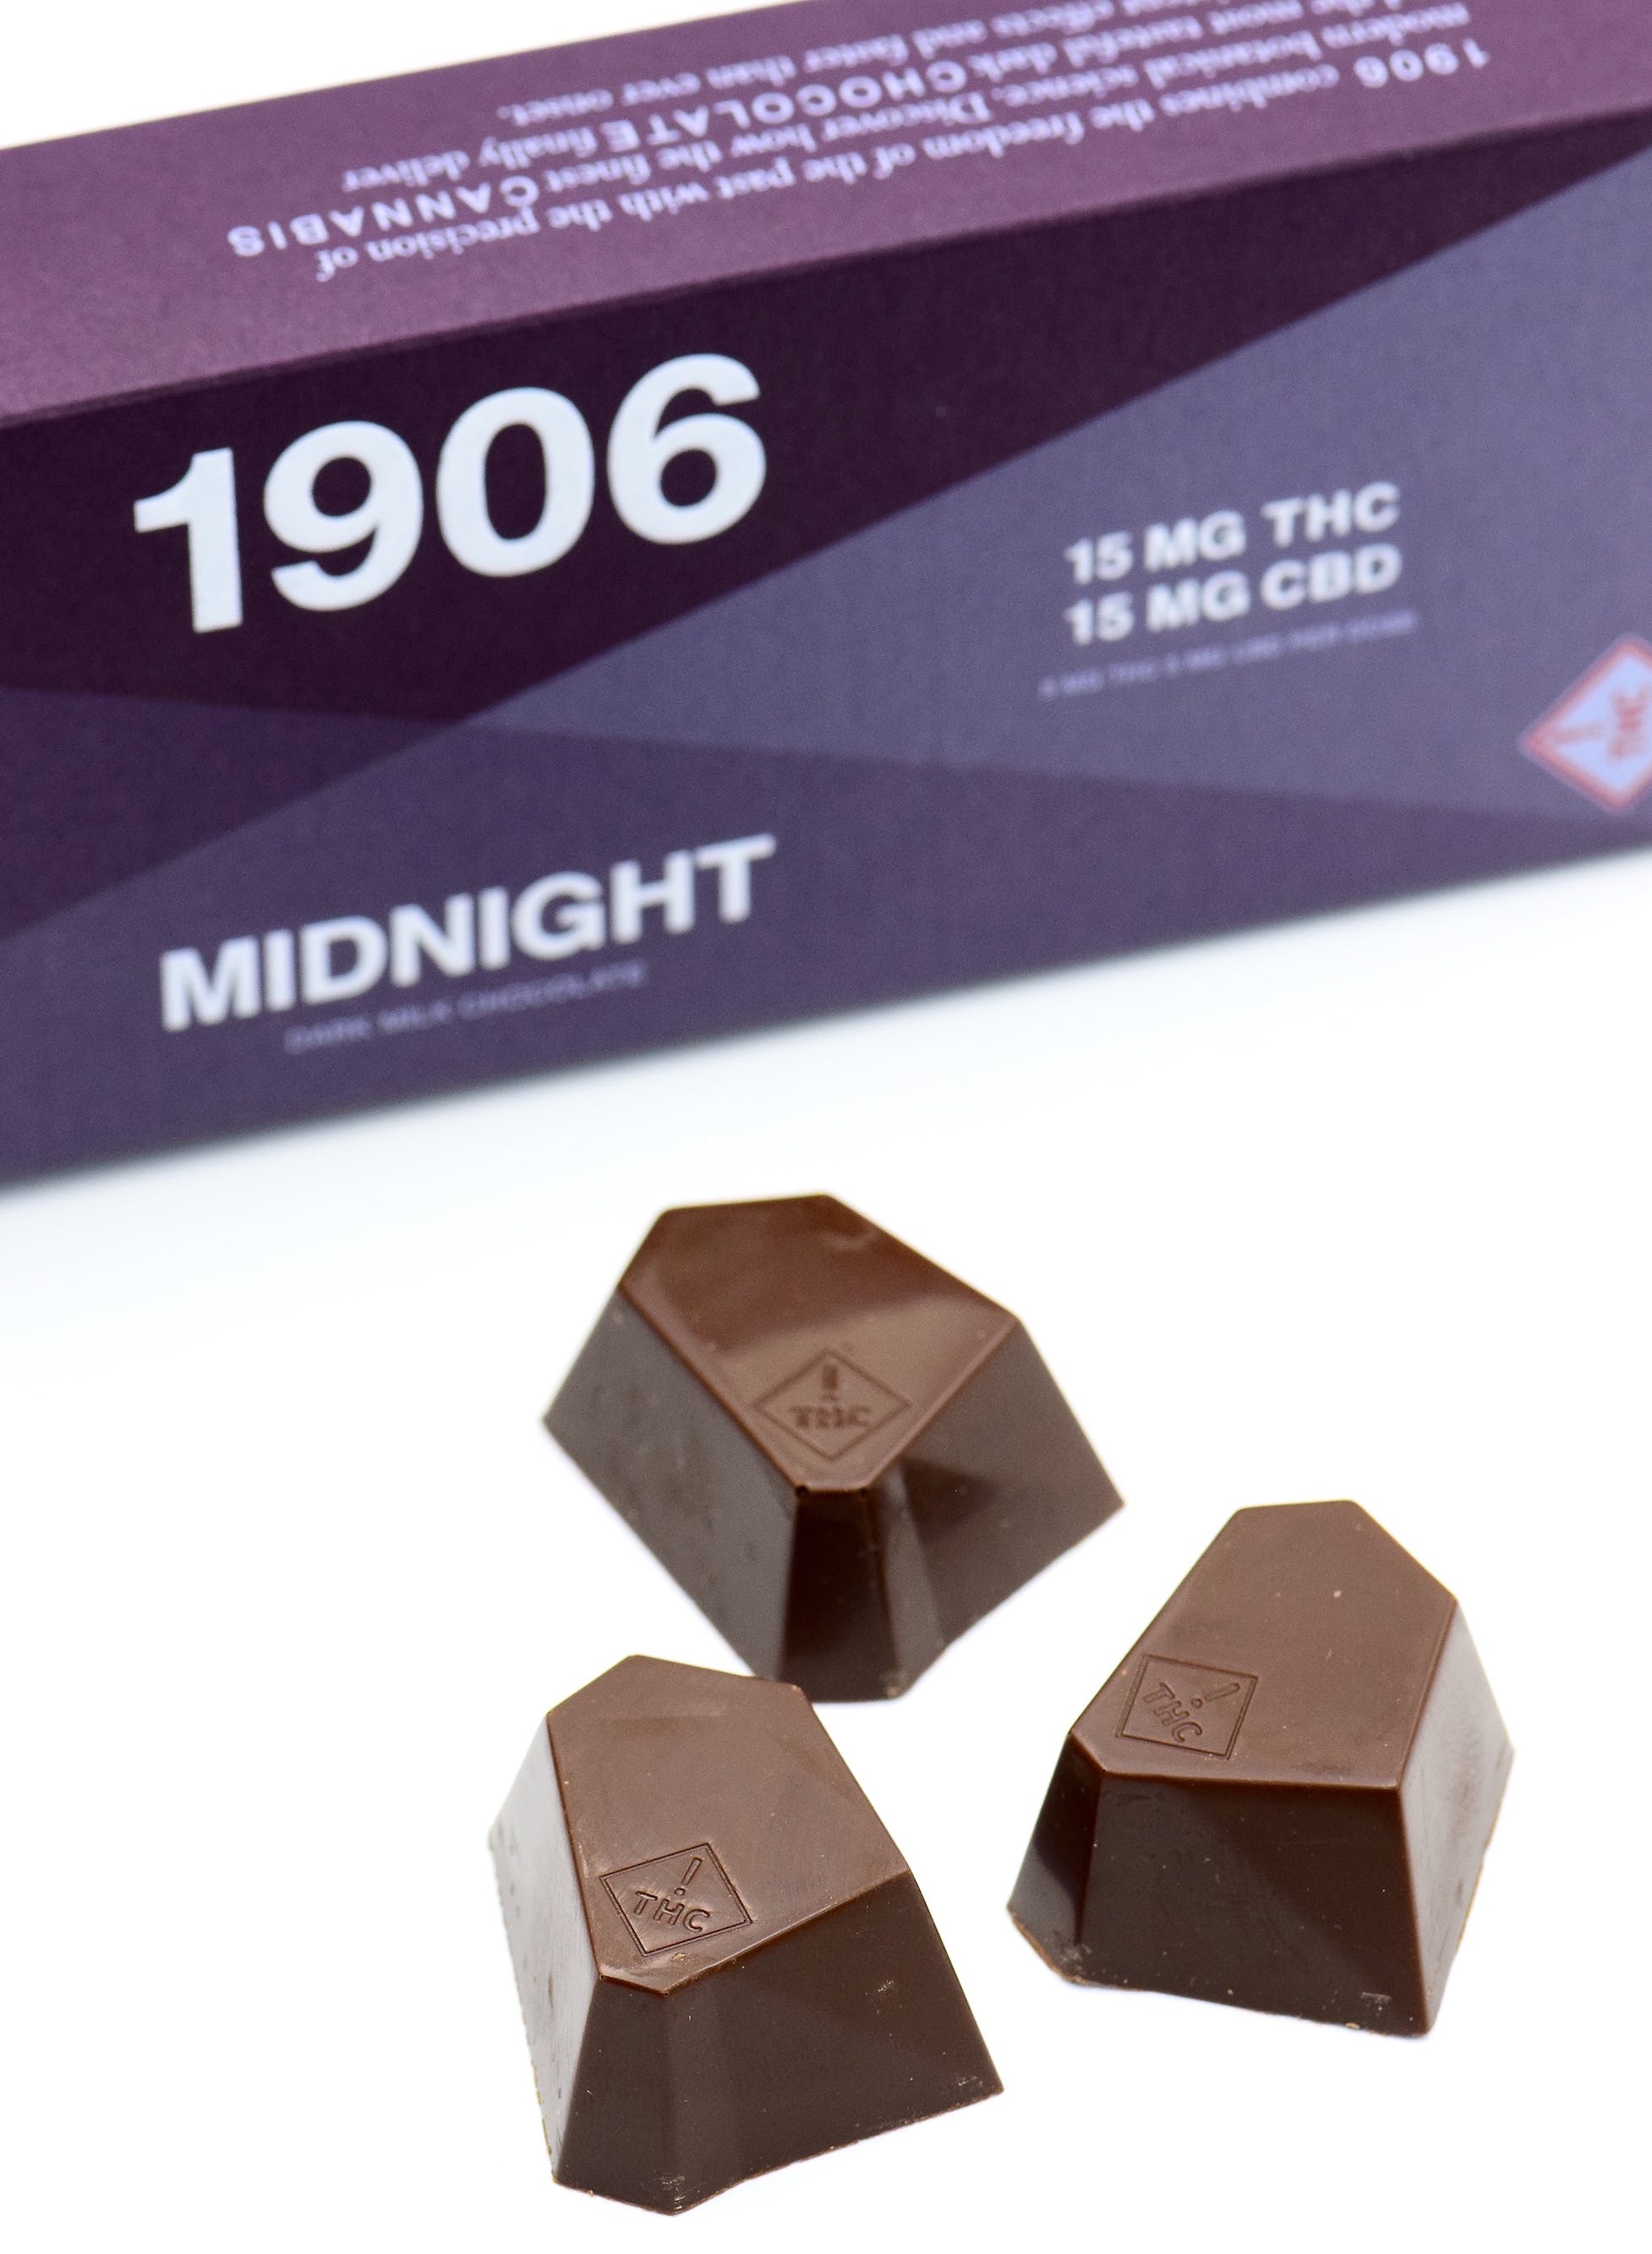 edible-1906-midnight-chocolate-3pk-15mg15mg